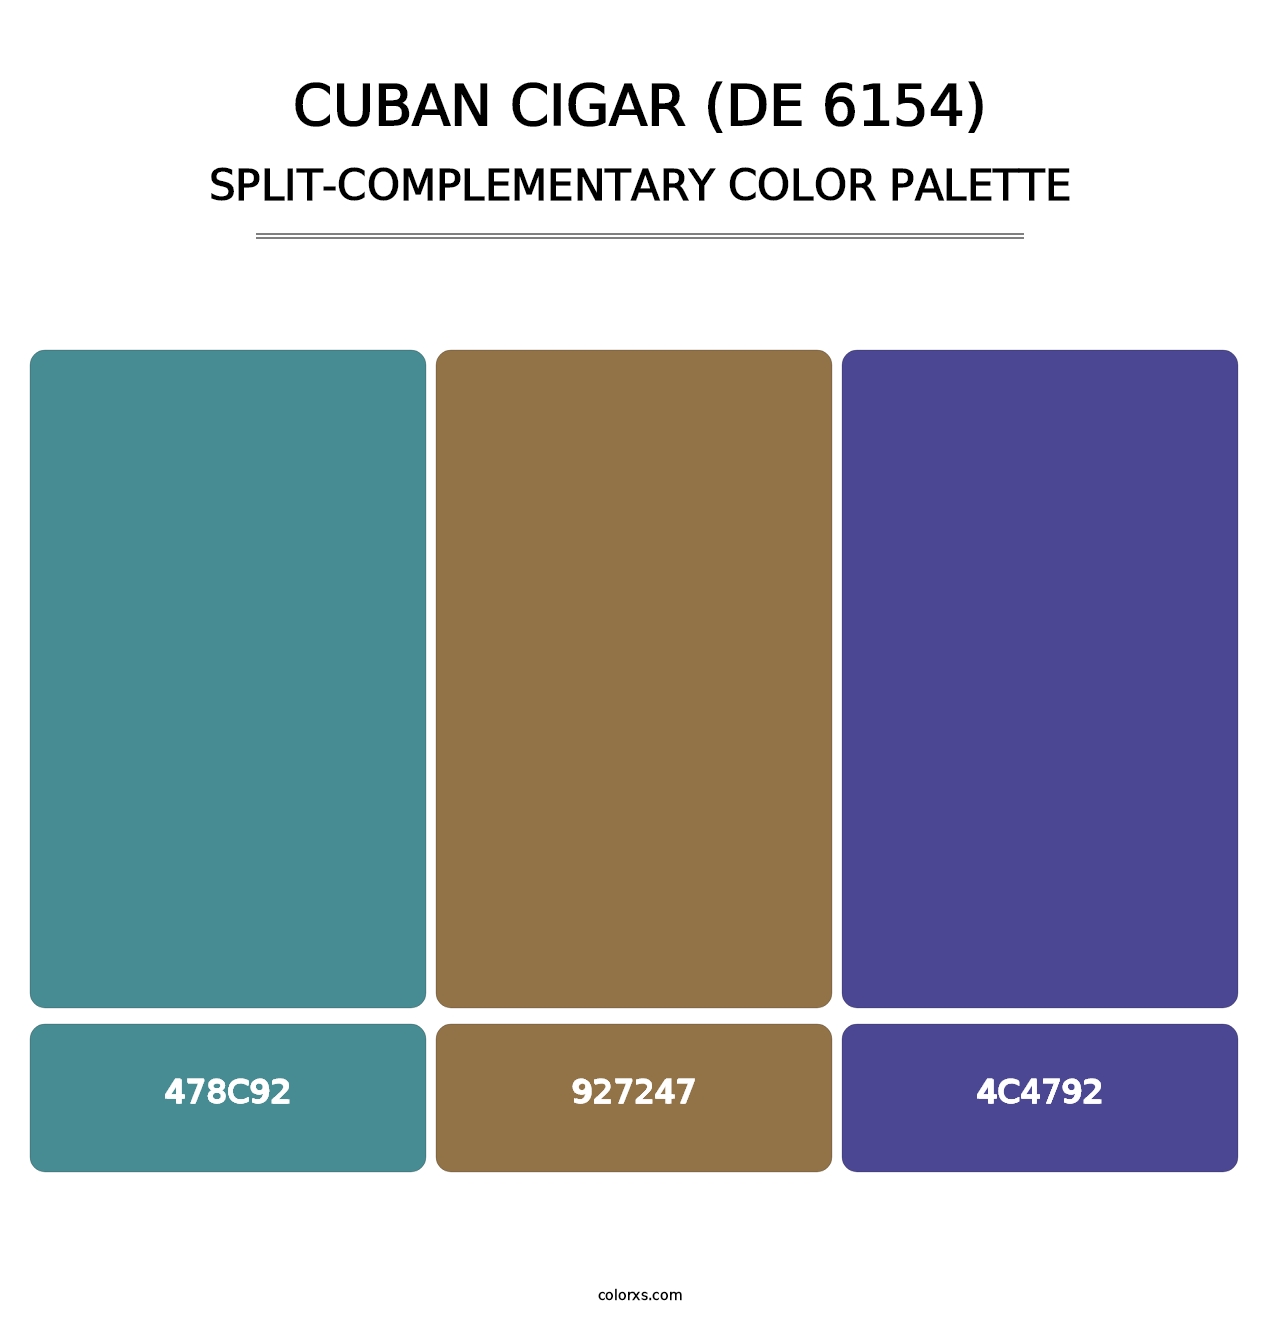 Cuban Cigar (DE 6154) - Split-Complementary Color Palette